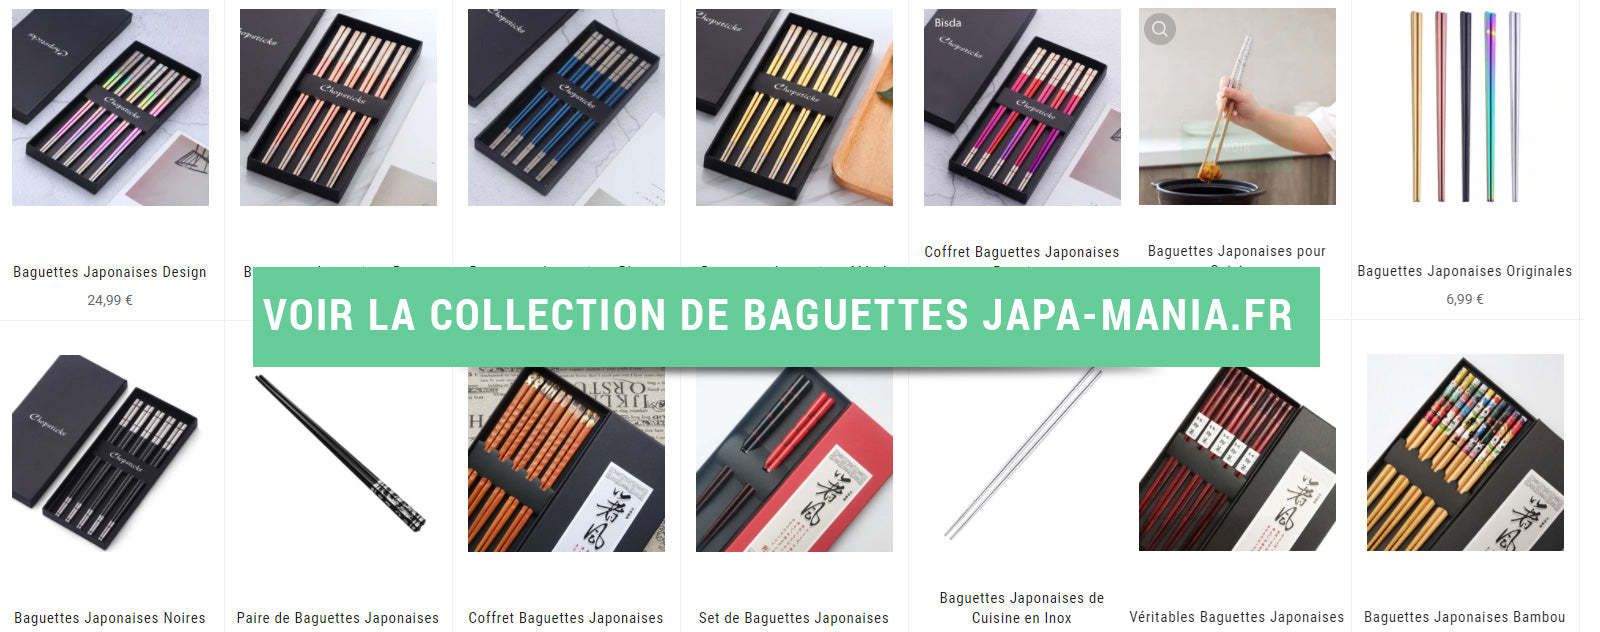 Collection Baguettes Japonaises